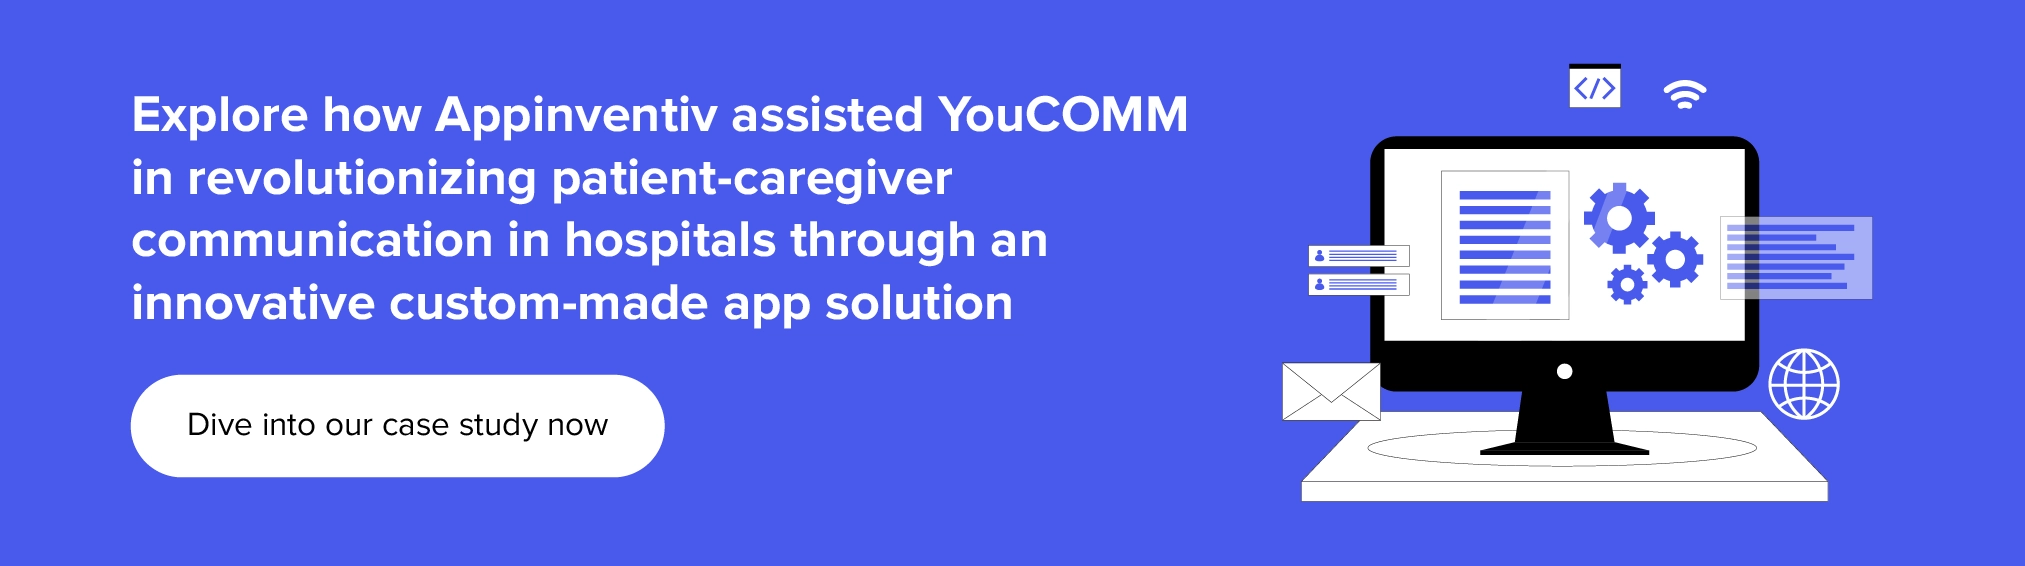 Appinventiv ayudó a YouCOMM a revolucionar la comunicación entre pacientes y cuidadores en los hospitales